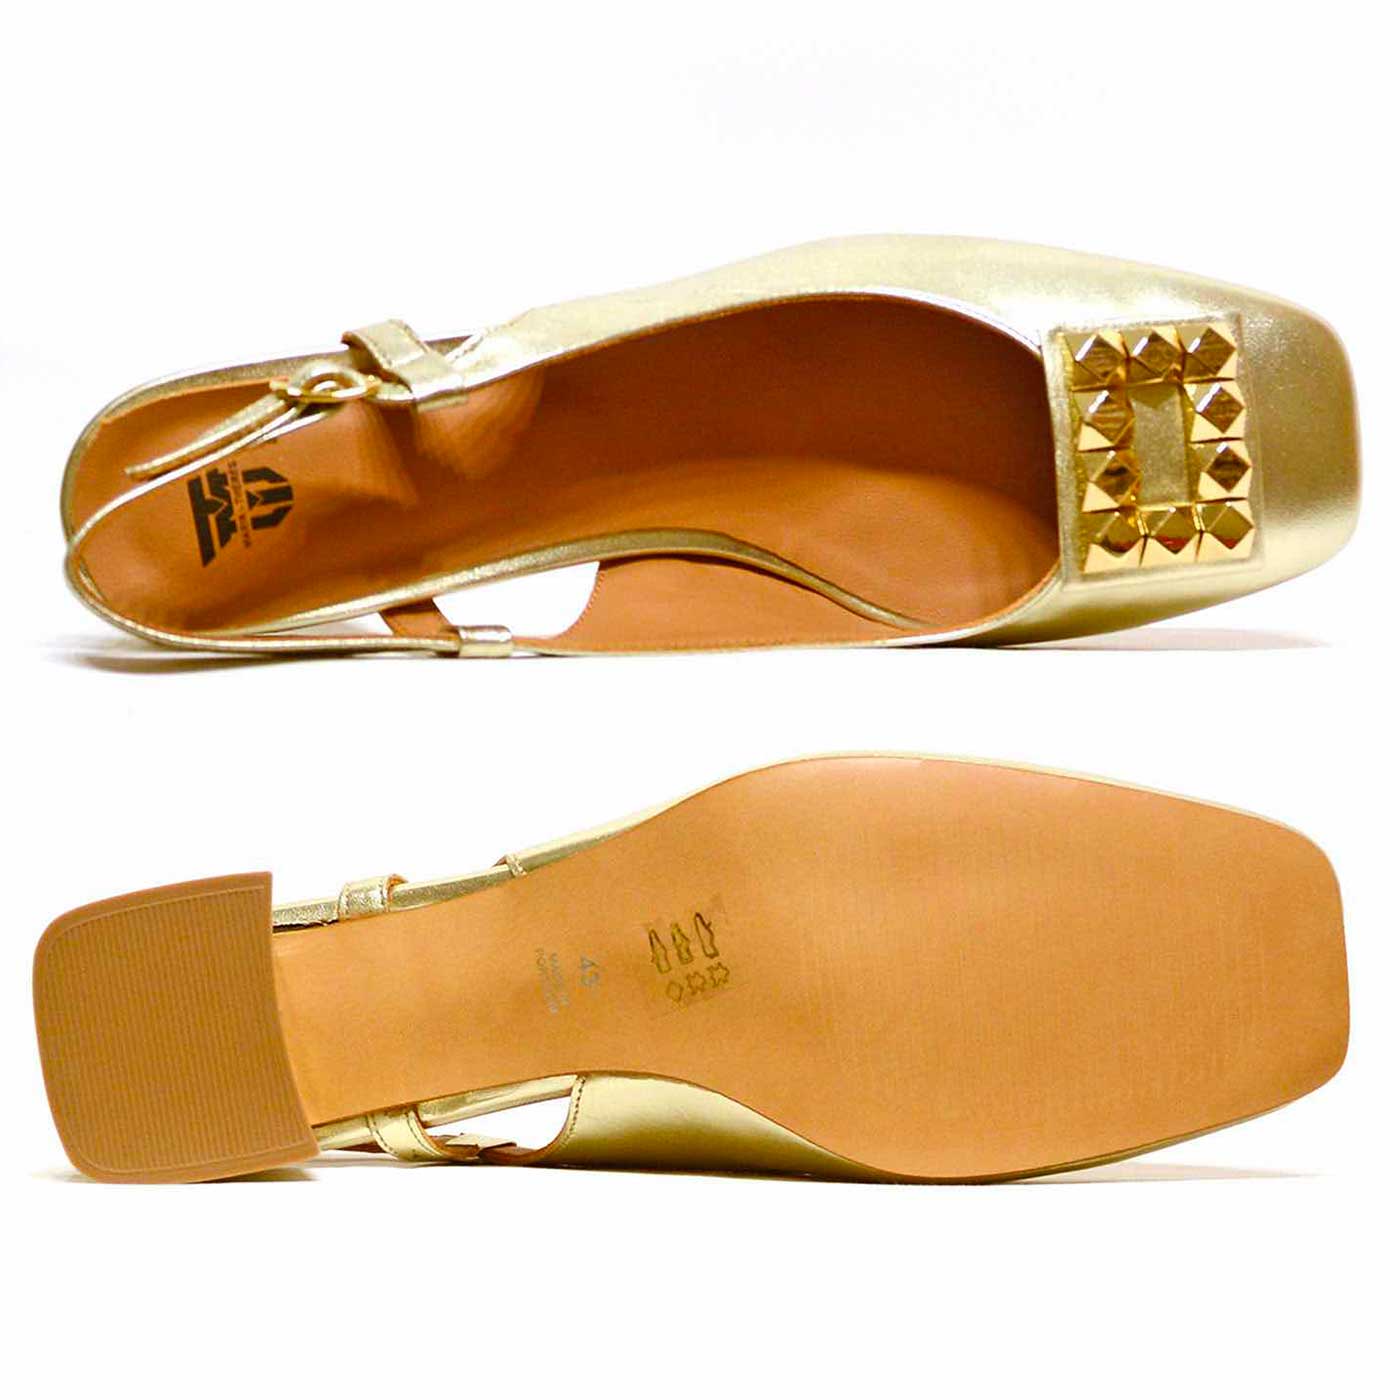 Damenschuhe Sandalen in Übergrößen Golden Glattleder